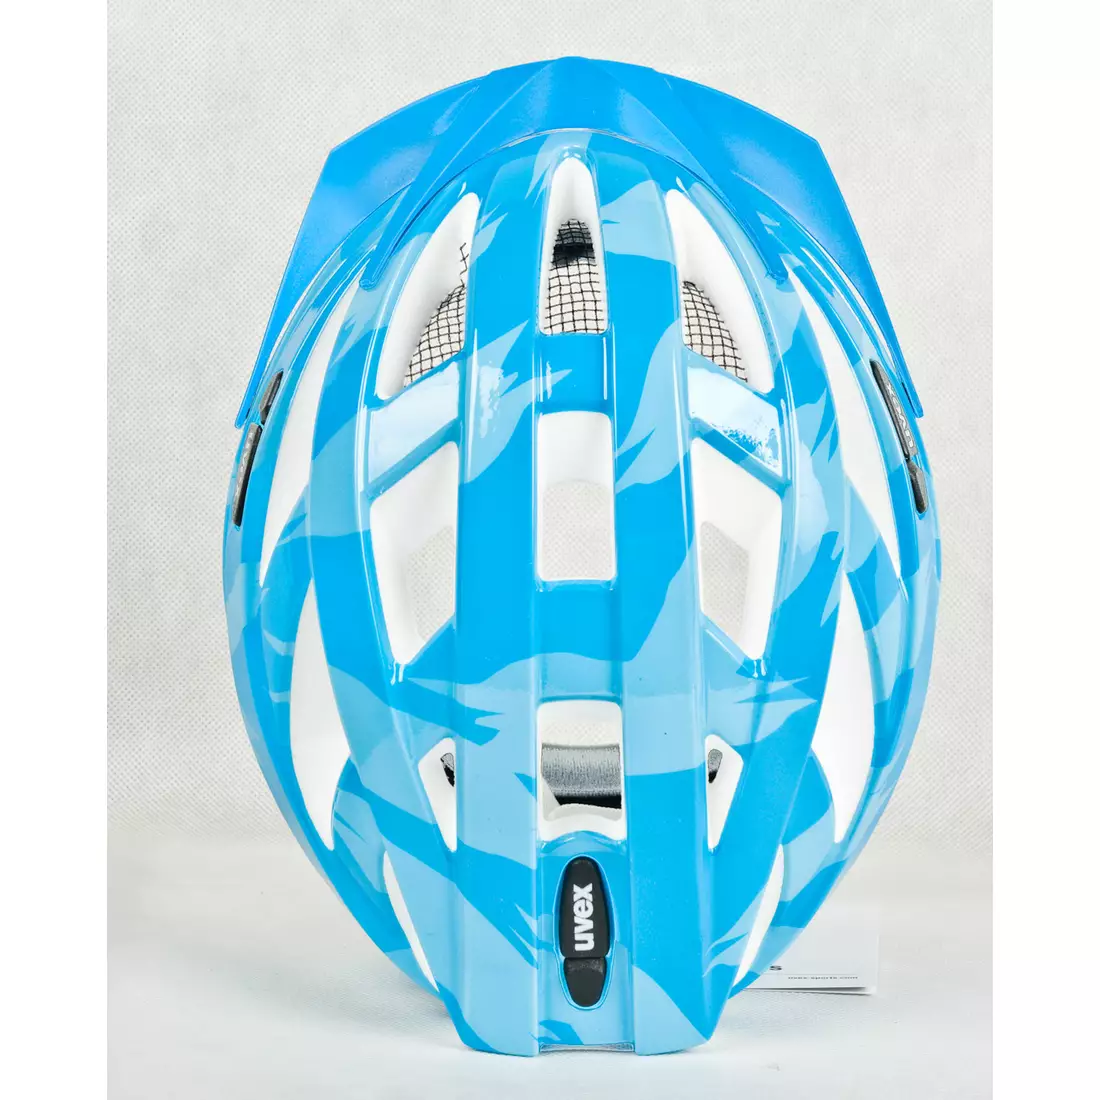 Cyklistická přilba UVEX I-VO C 41041720 světle modrá